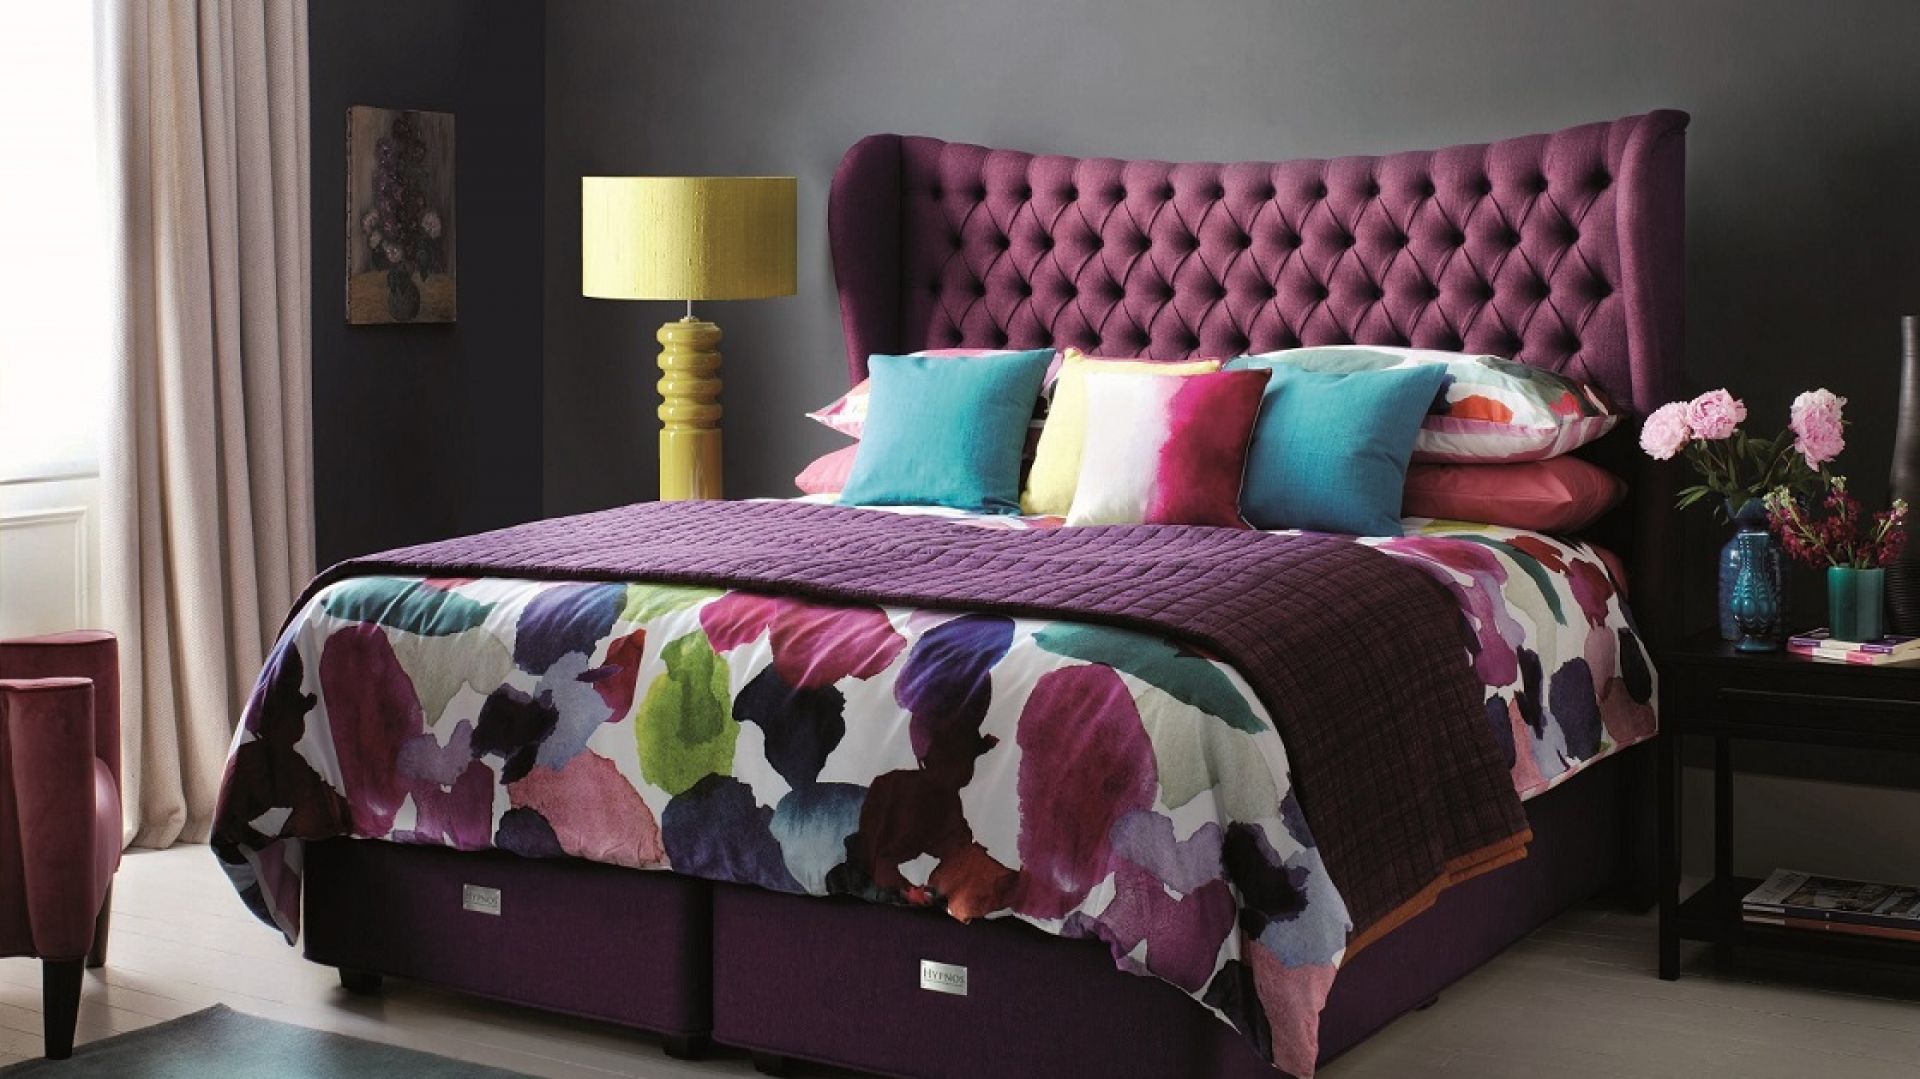 Meble do sypialni - jak wprowadzić kolorowe elementy